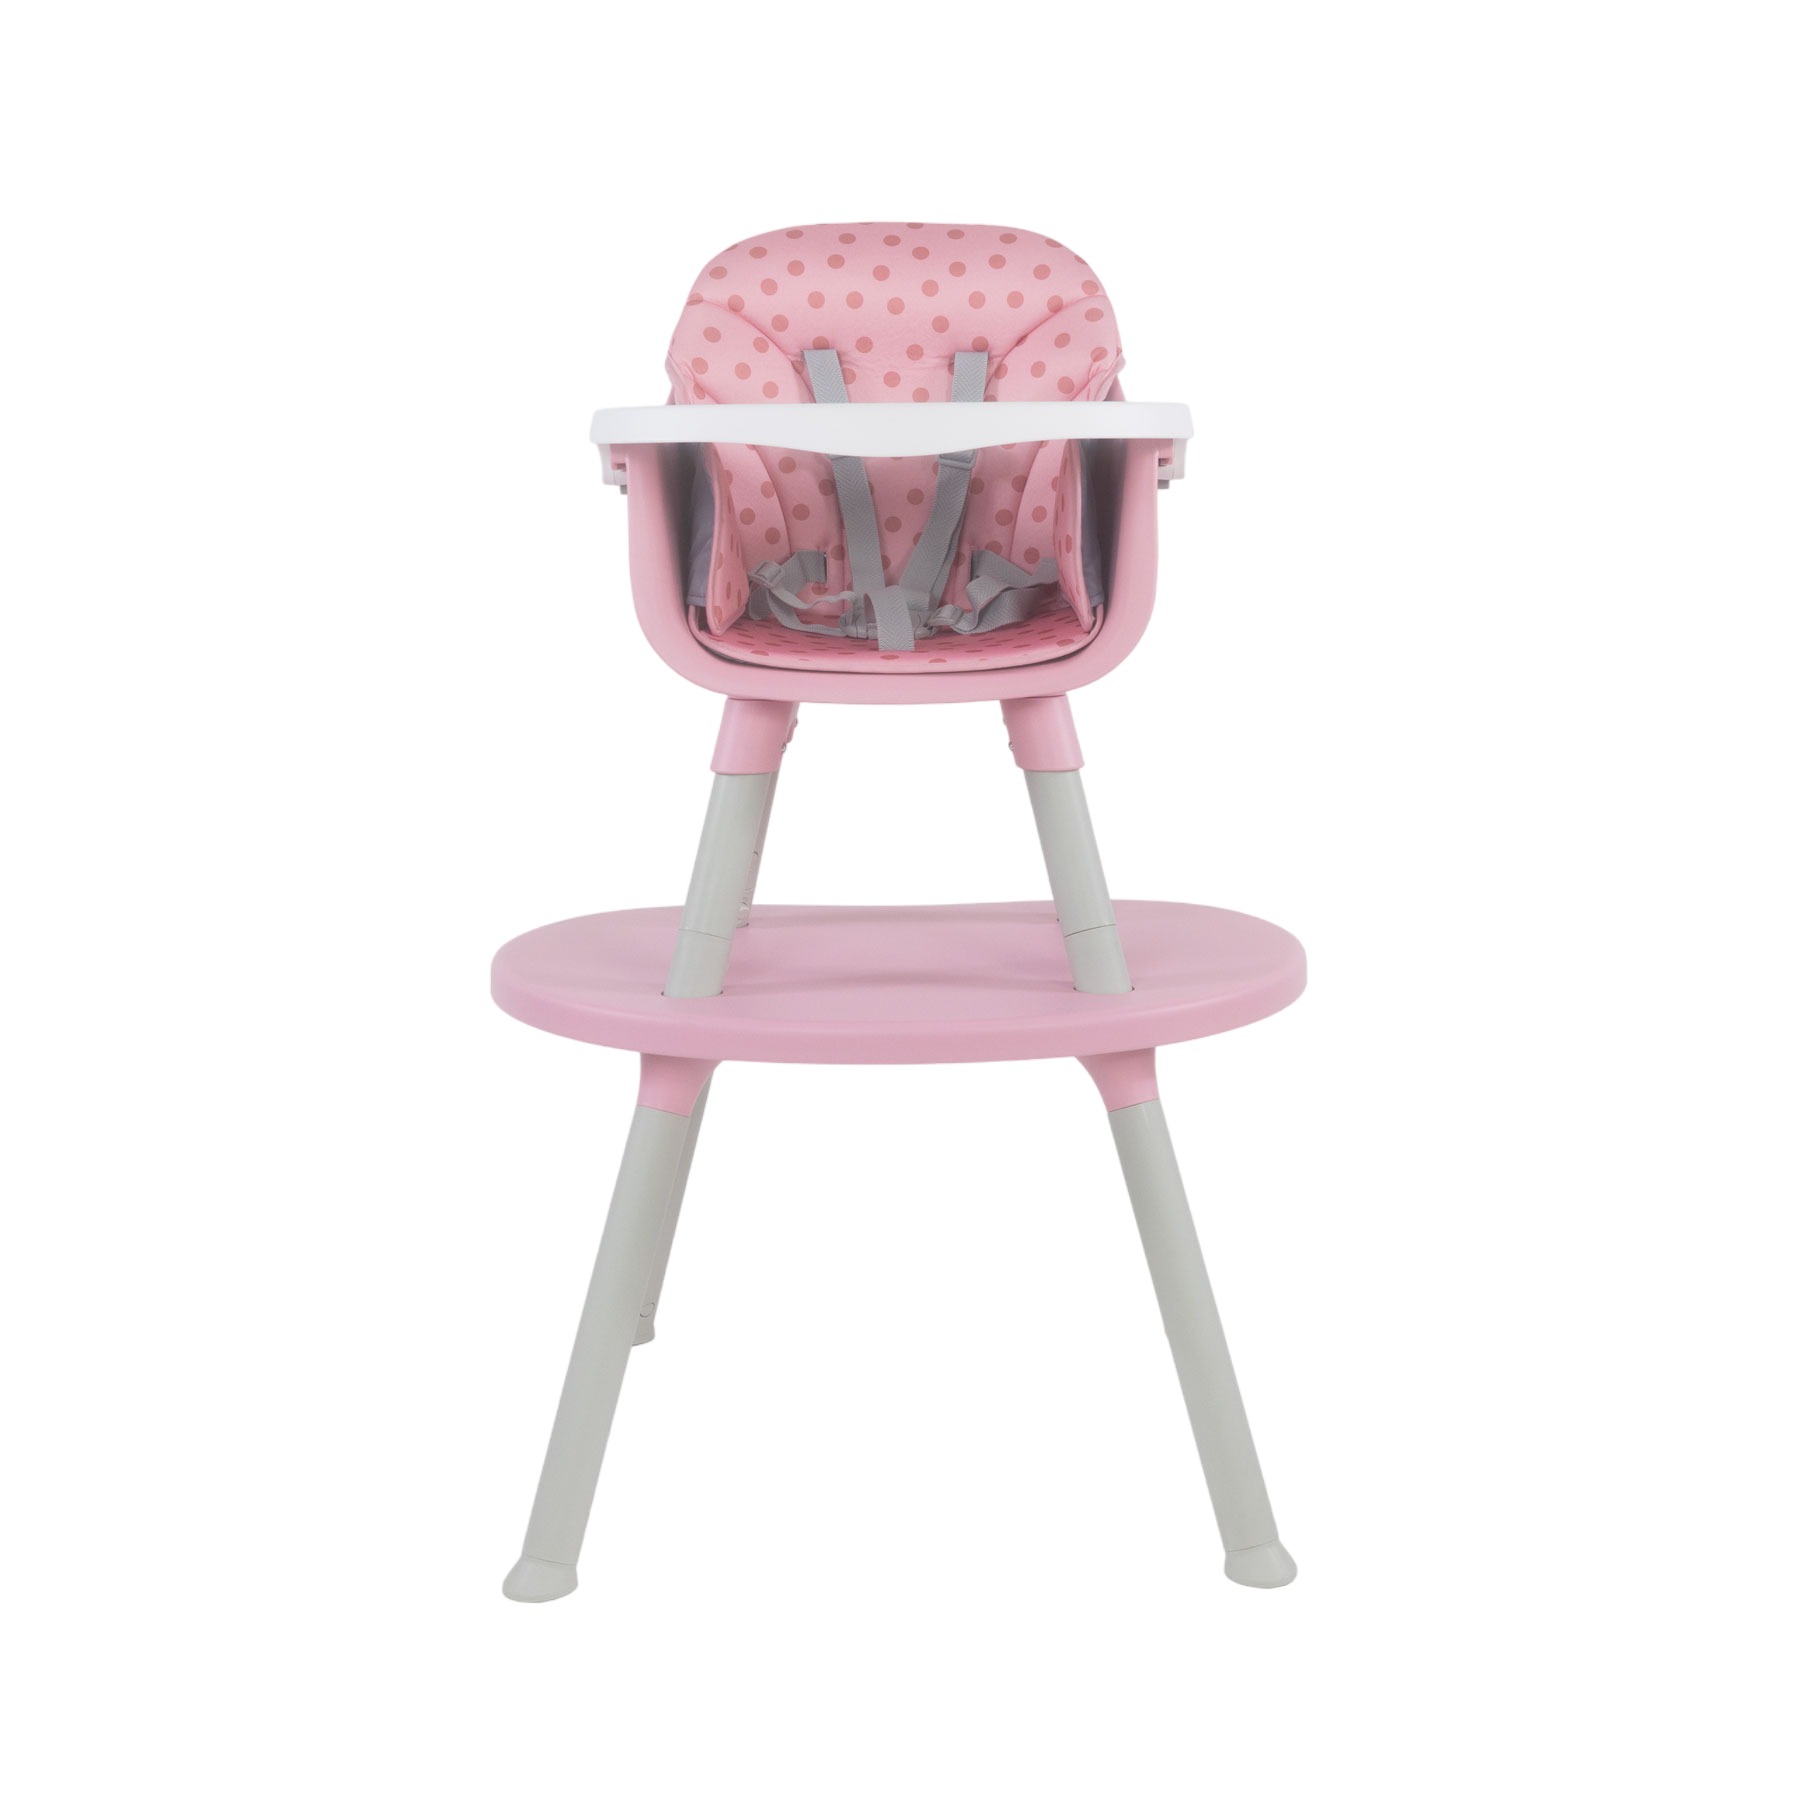 BEBESIT Baby Desk 3en1 Rosa